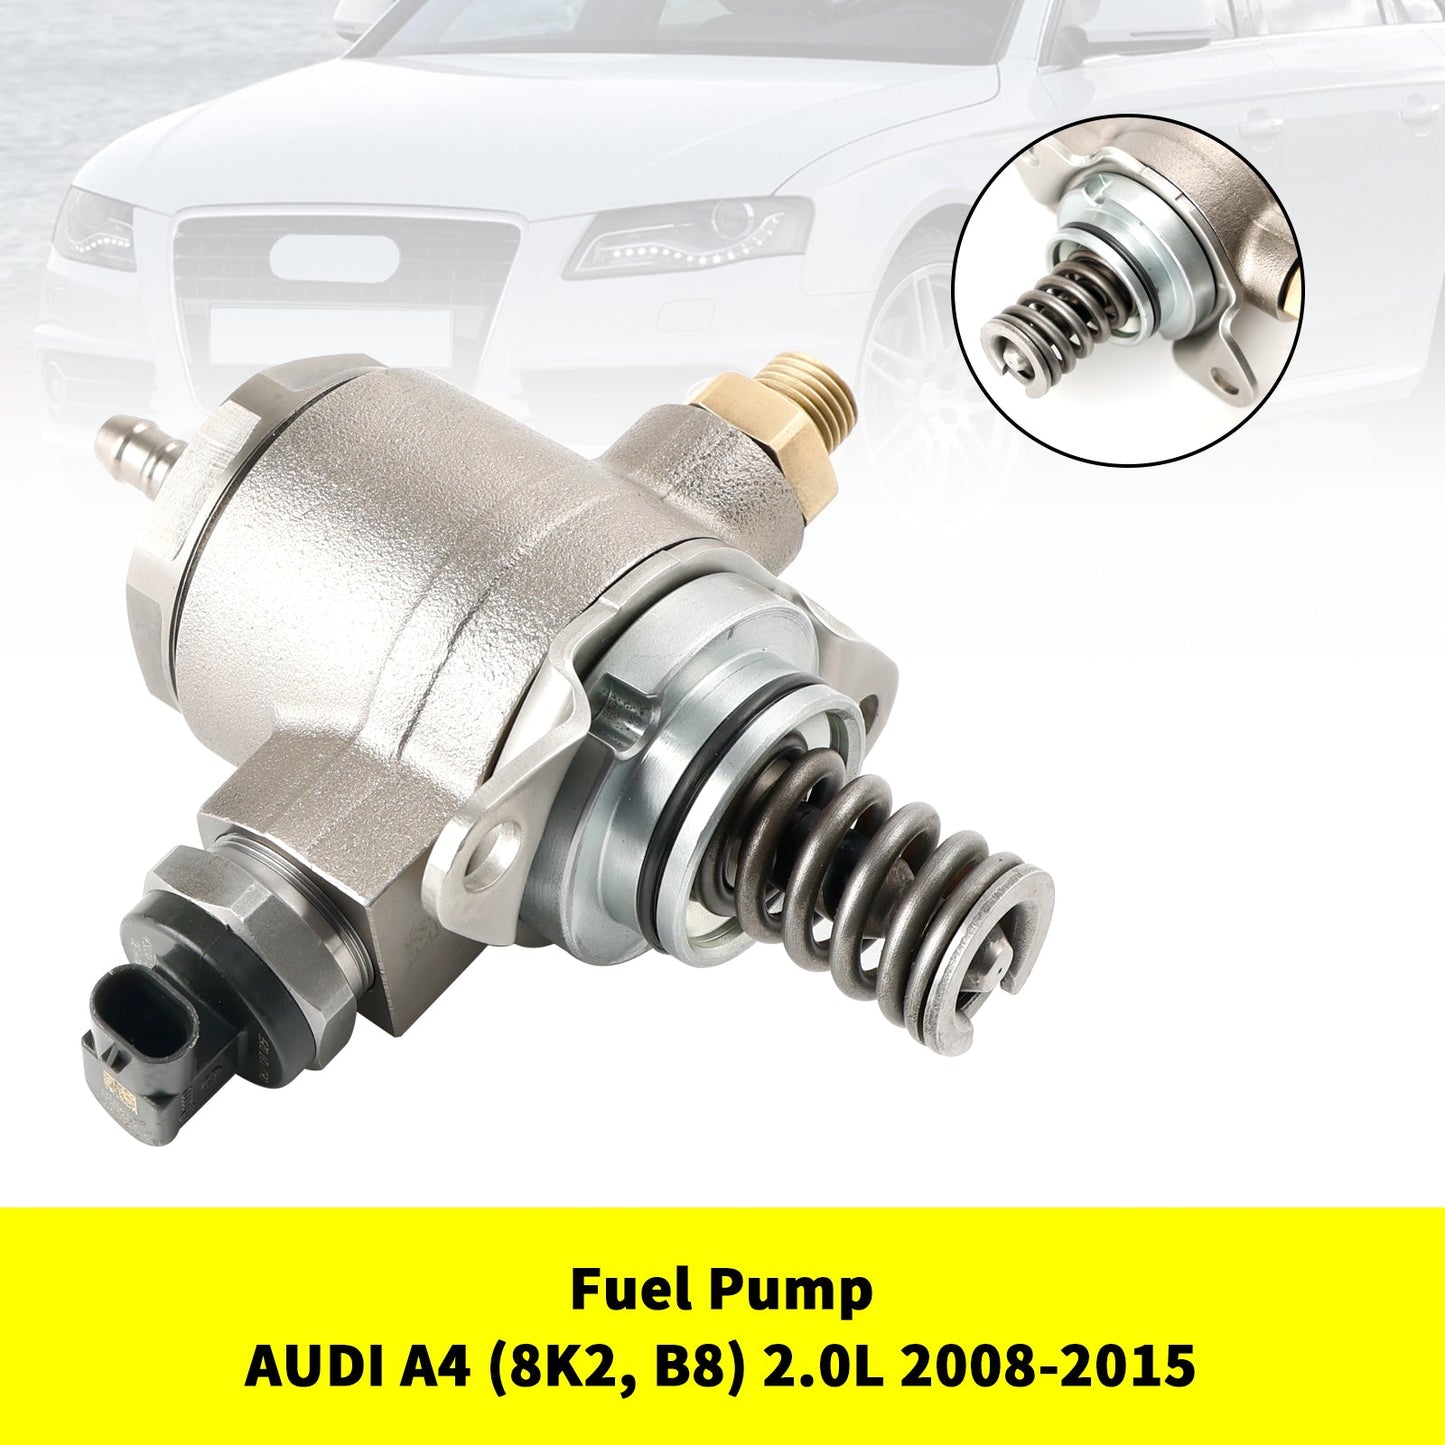 Pompa carburante pompa ad alta pressione 2011-2014 AUDI A6 (4G2, C7, 4GC) 06J127025E